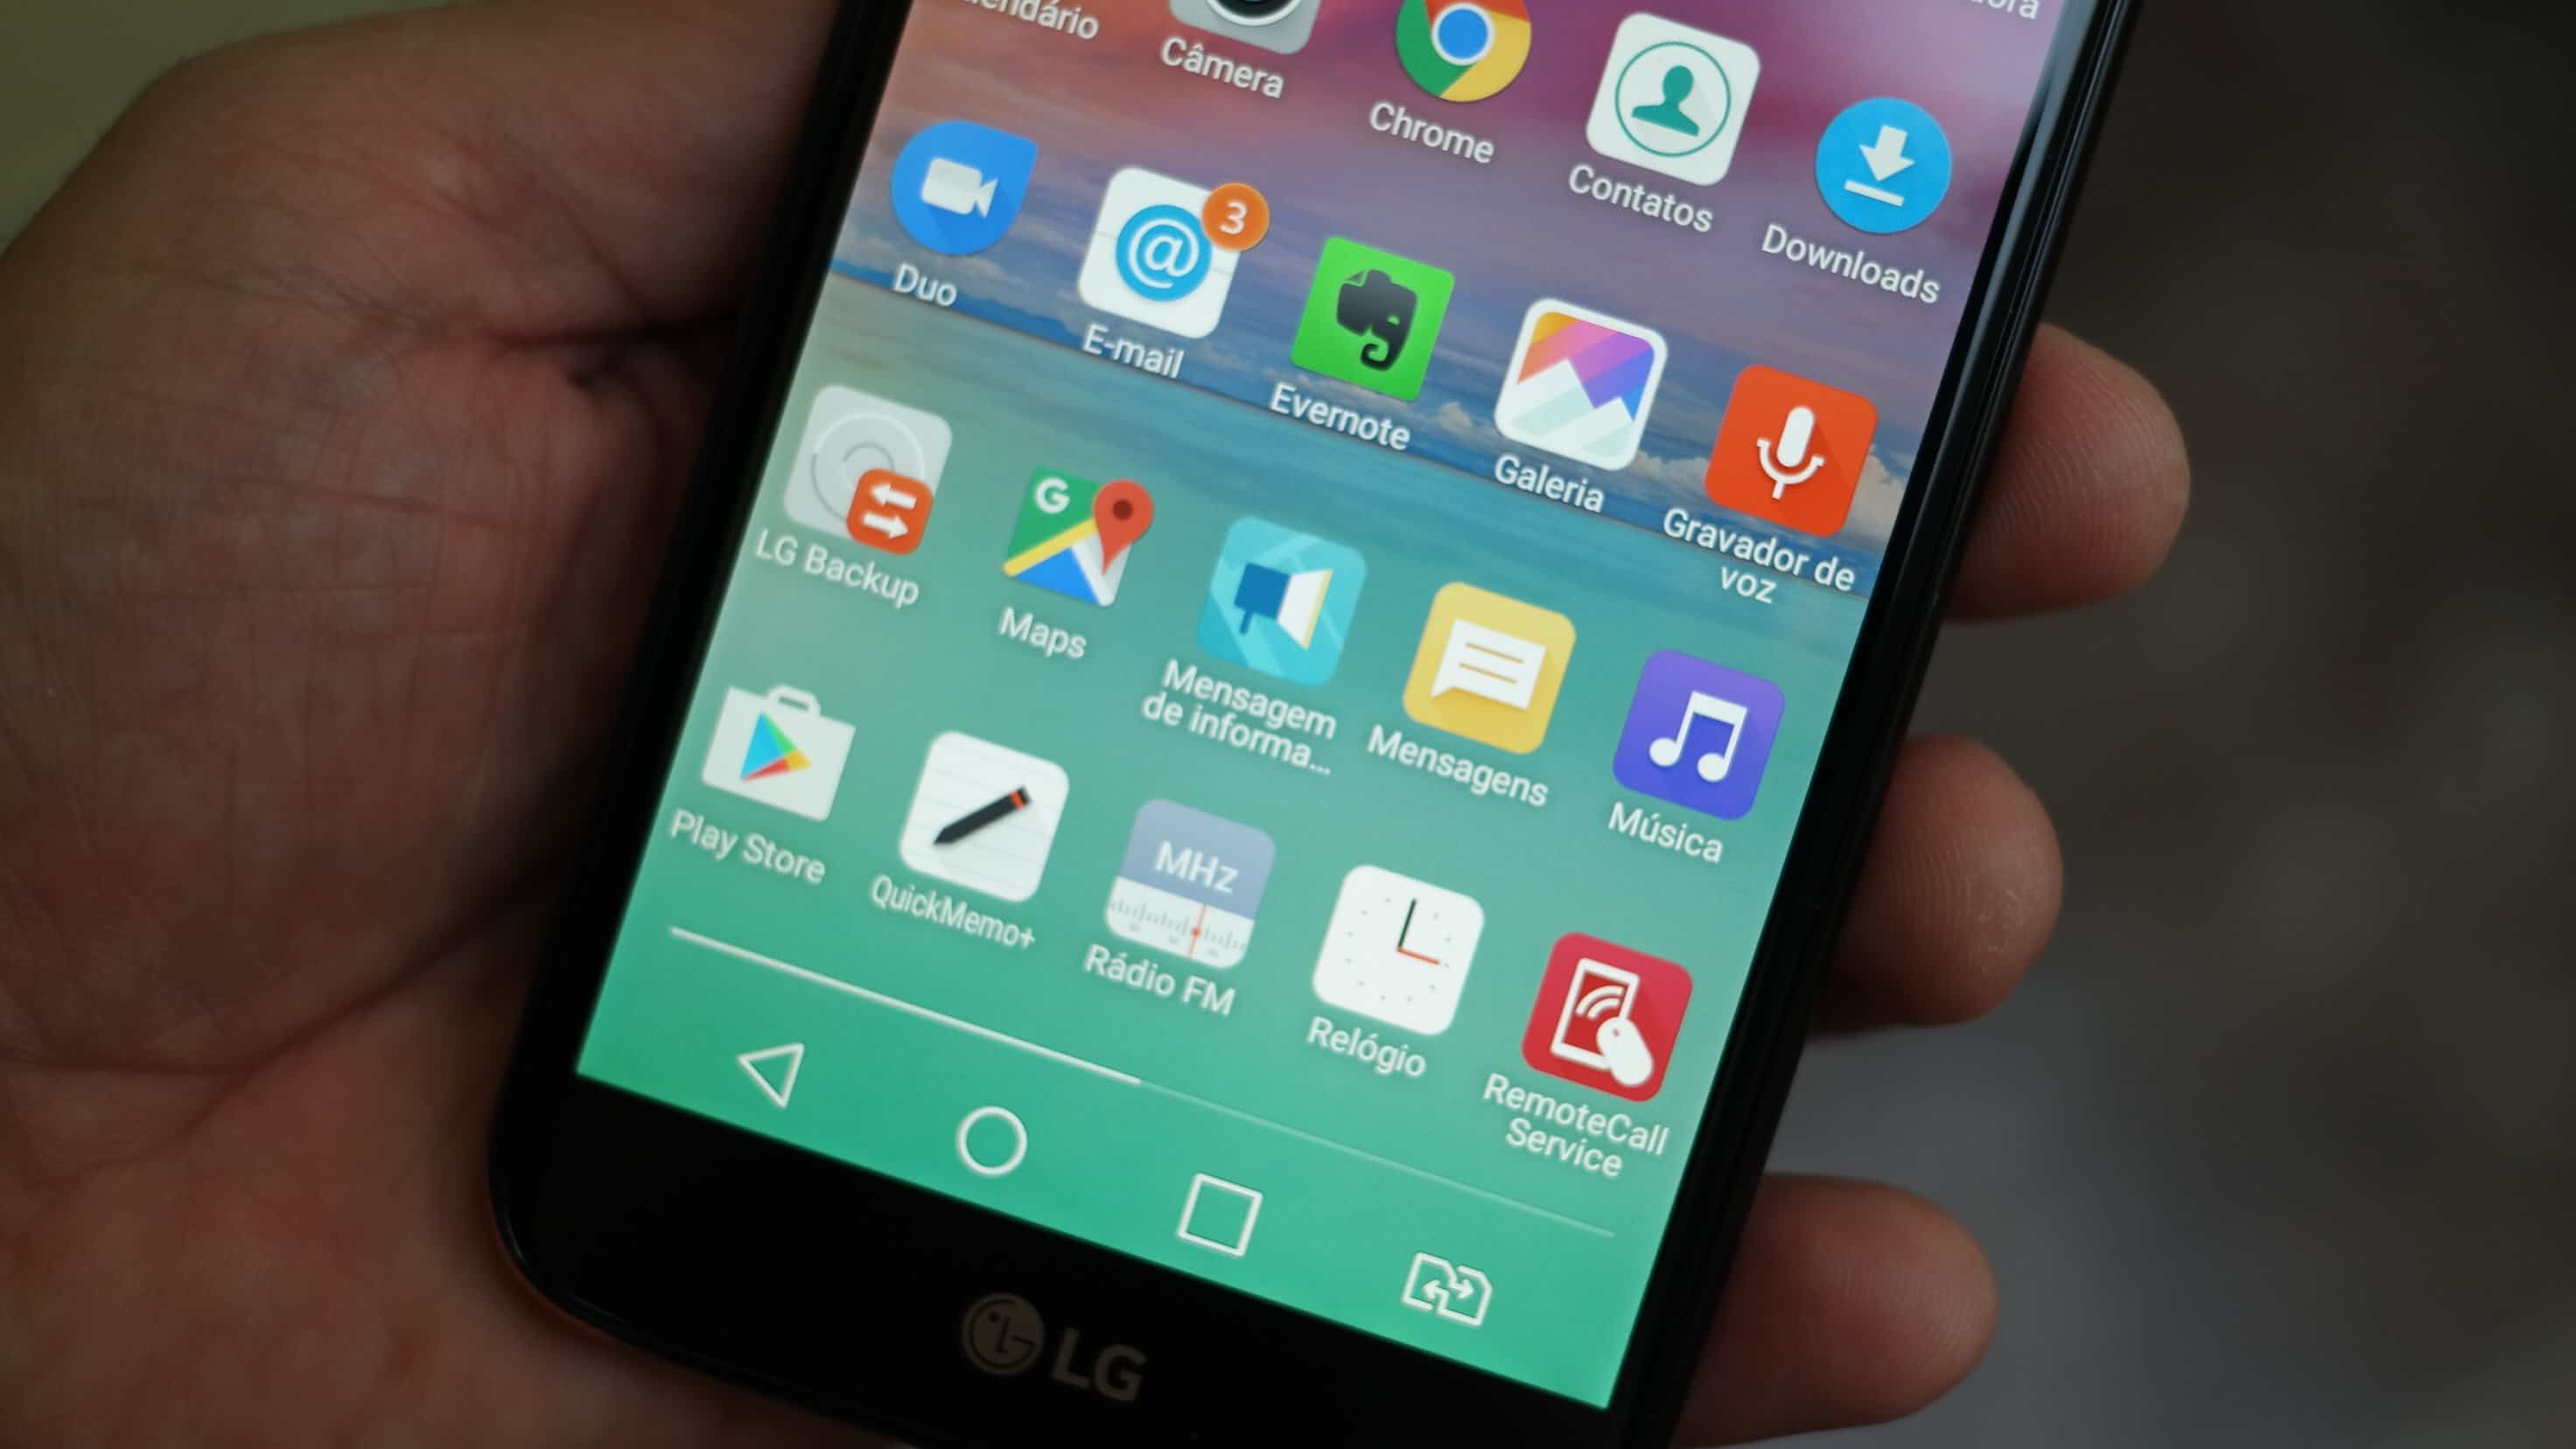 Review LG K10 Novo, um excelente smartphone para selfies 6